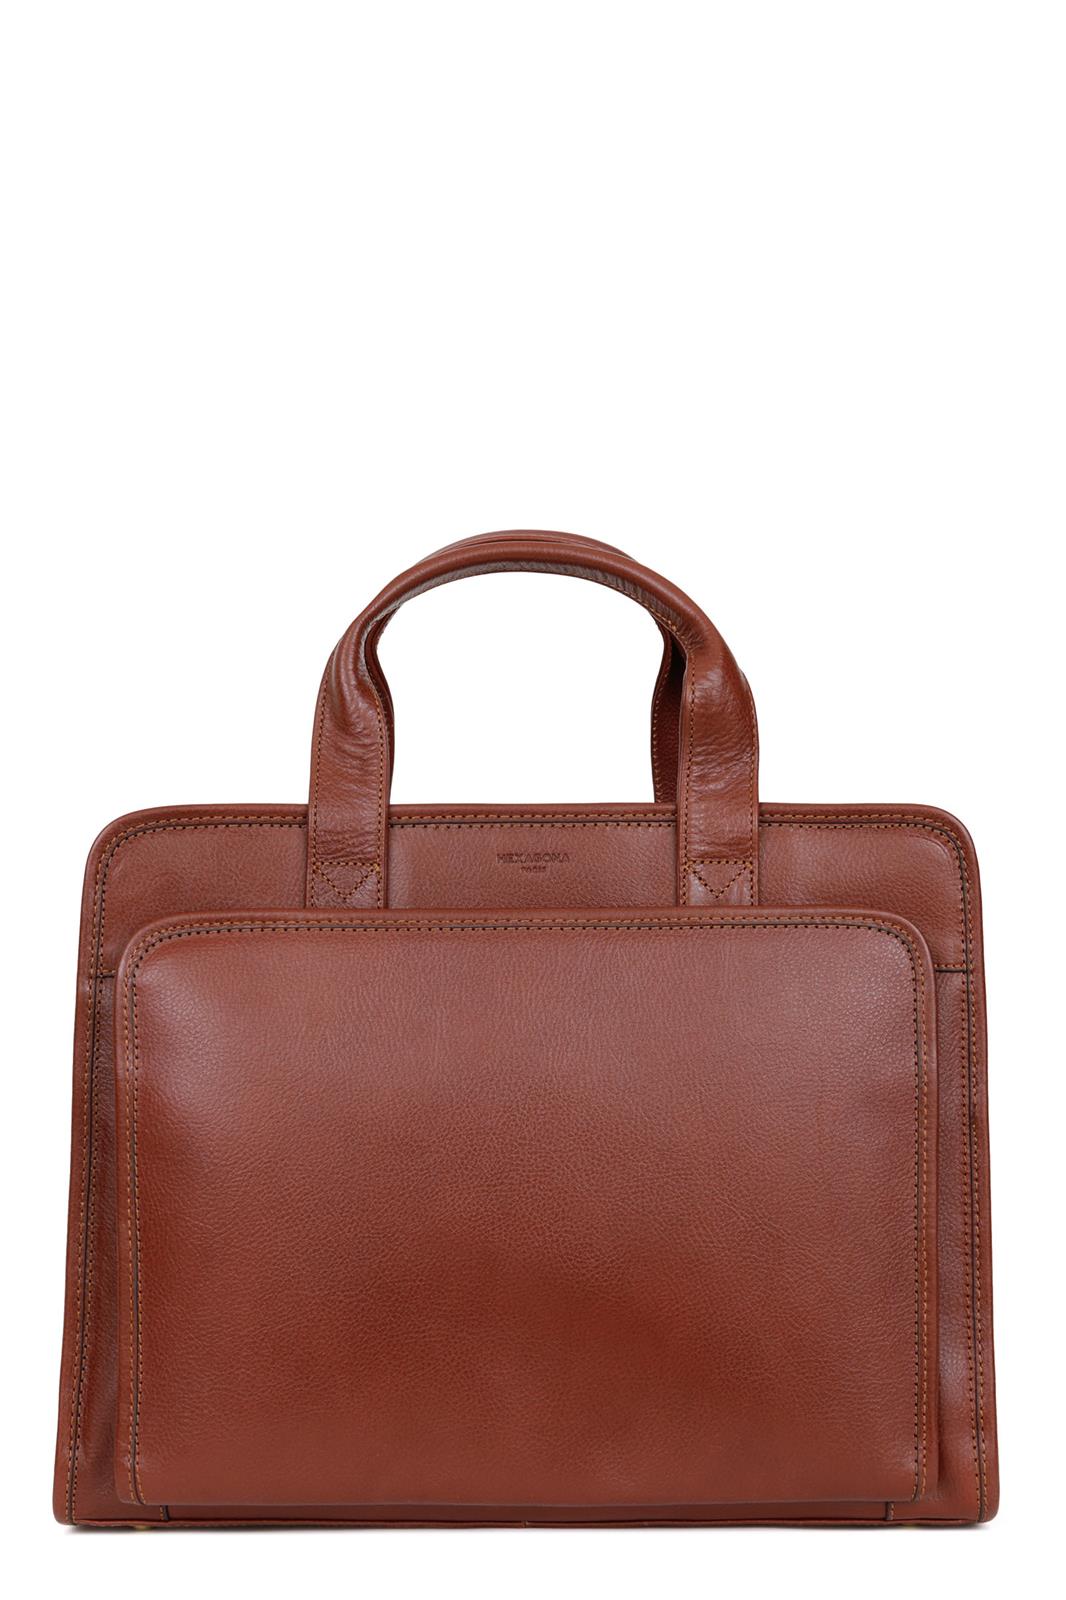 E-shop Luxusná kožená taška na rameno HEXAGONA PARIS